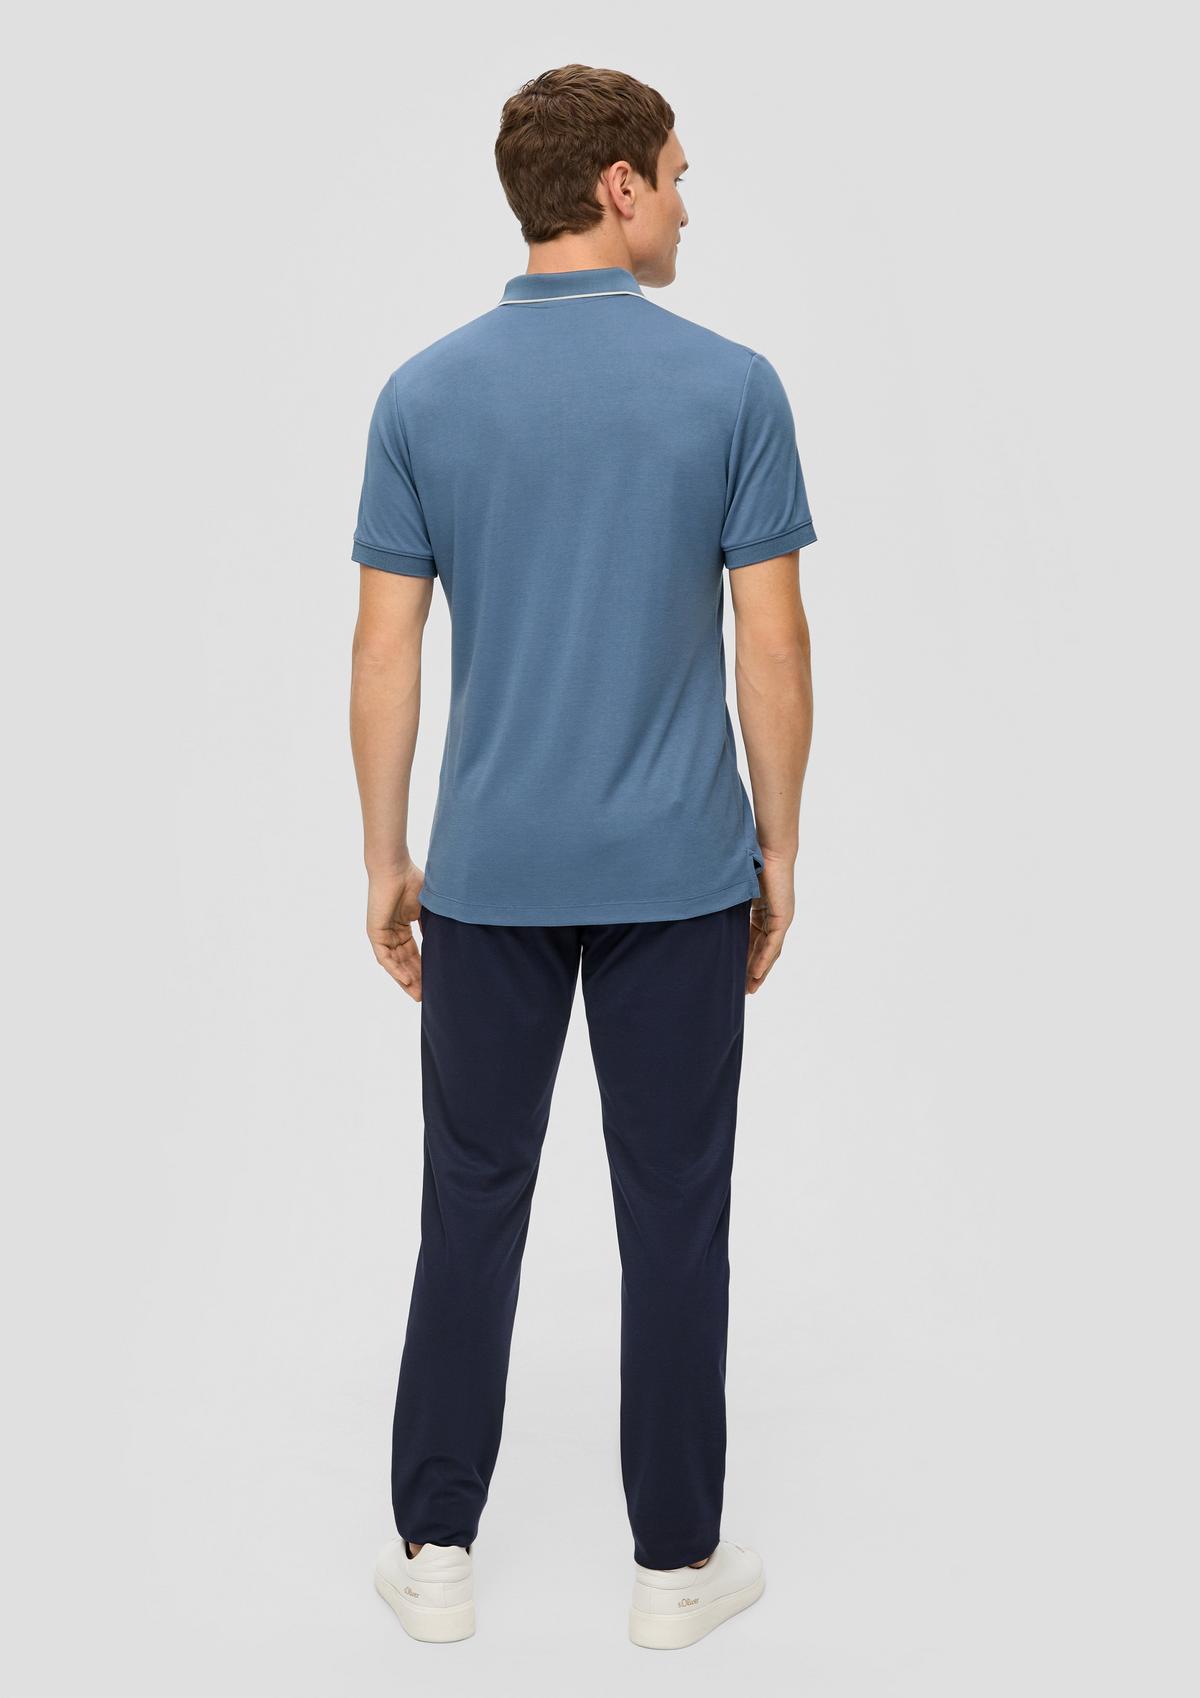 s.Oliver Modal blend polo shirt